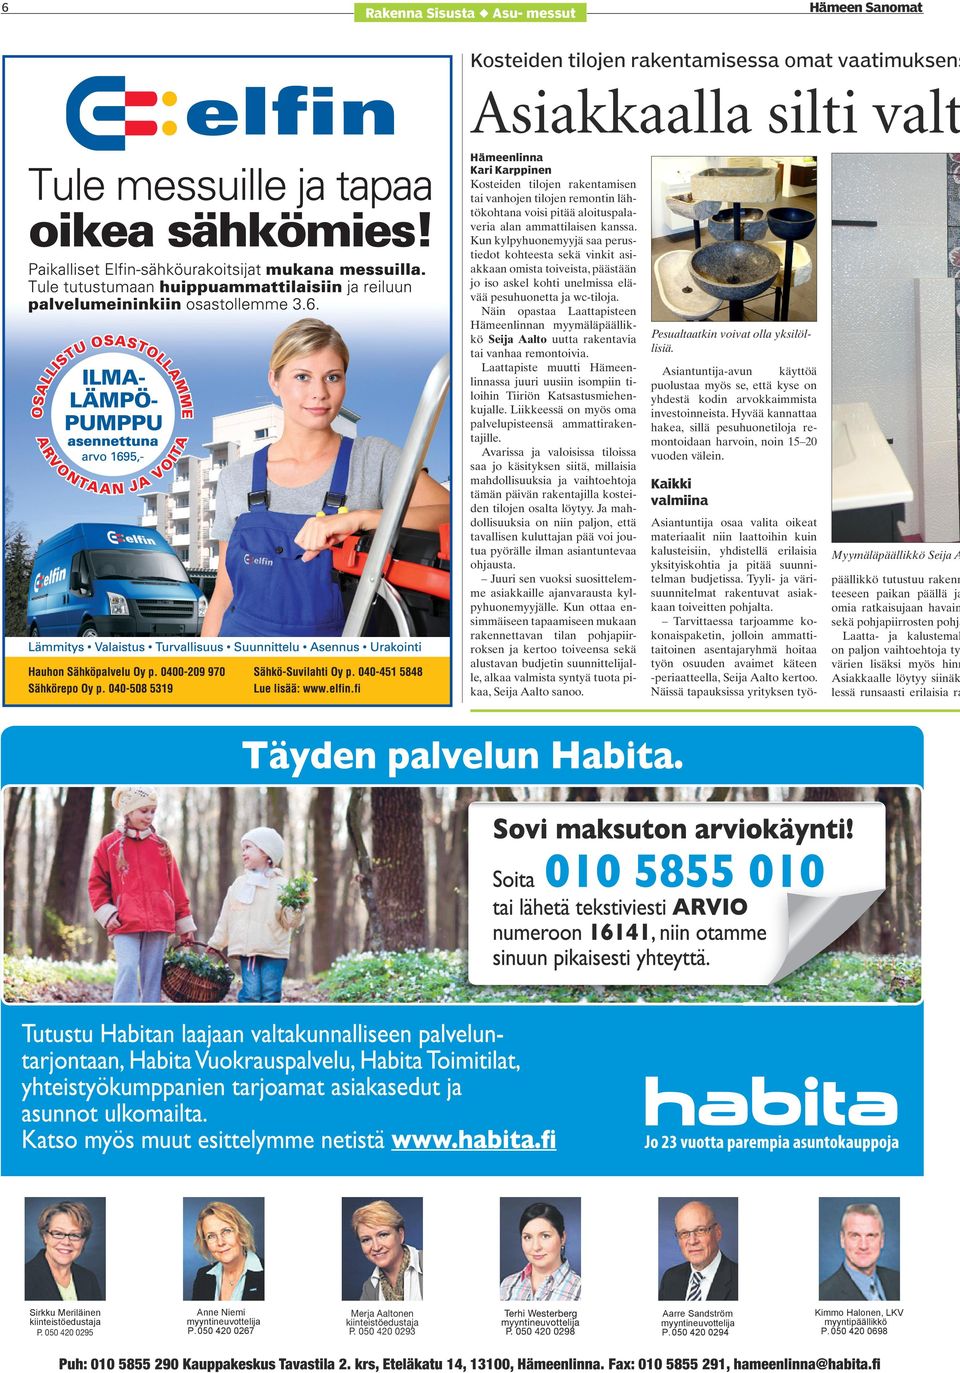 Näin opataa Laattapiteen Hämeenlinnan myymäläpäällikkö Seija Aalto uutta rakentavia tai vanhaa remontoivia. Laattapite muutti Hämeenlinnaa juuri uuiin iompiin tiloihin Tiiriön Katatumiehenkujalle.